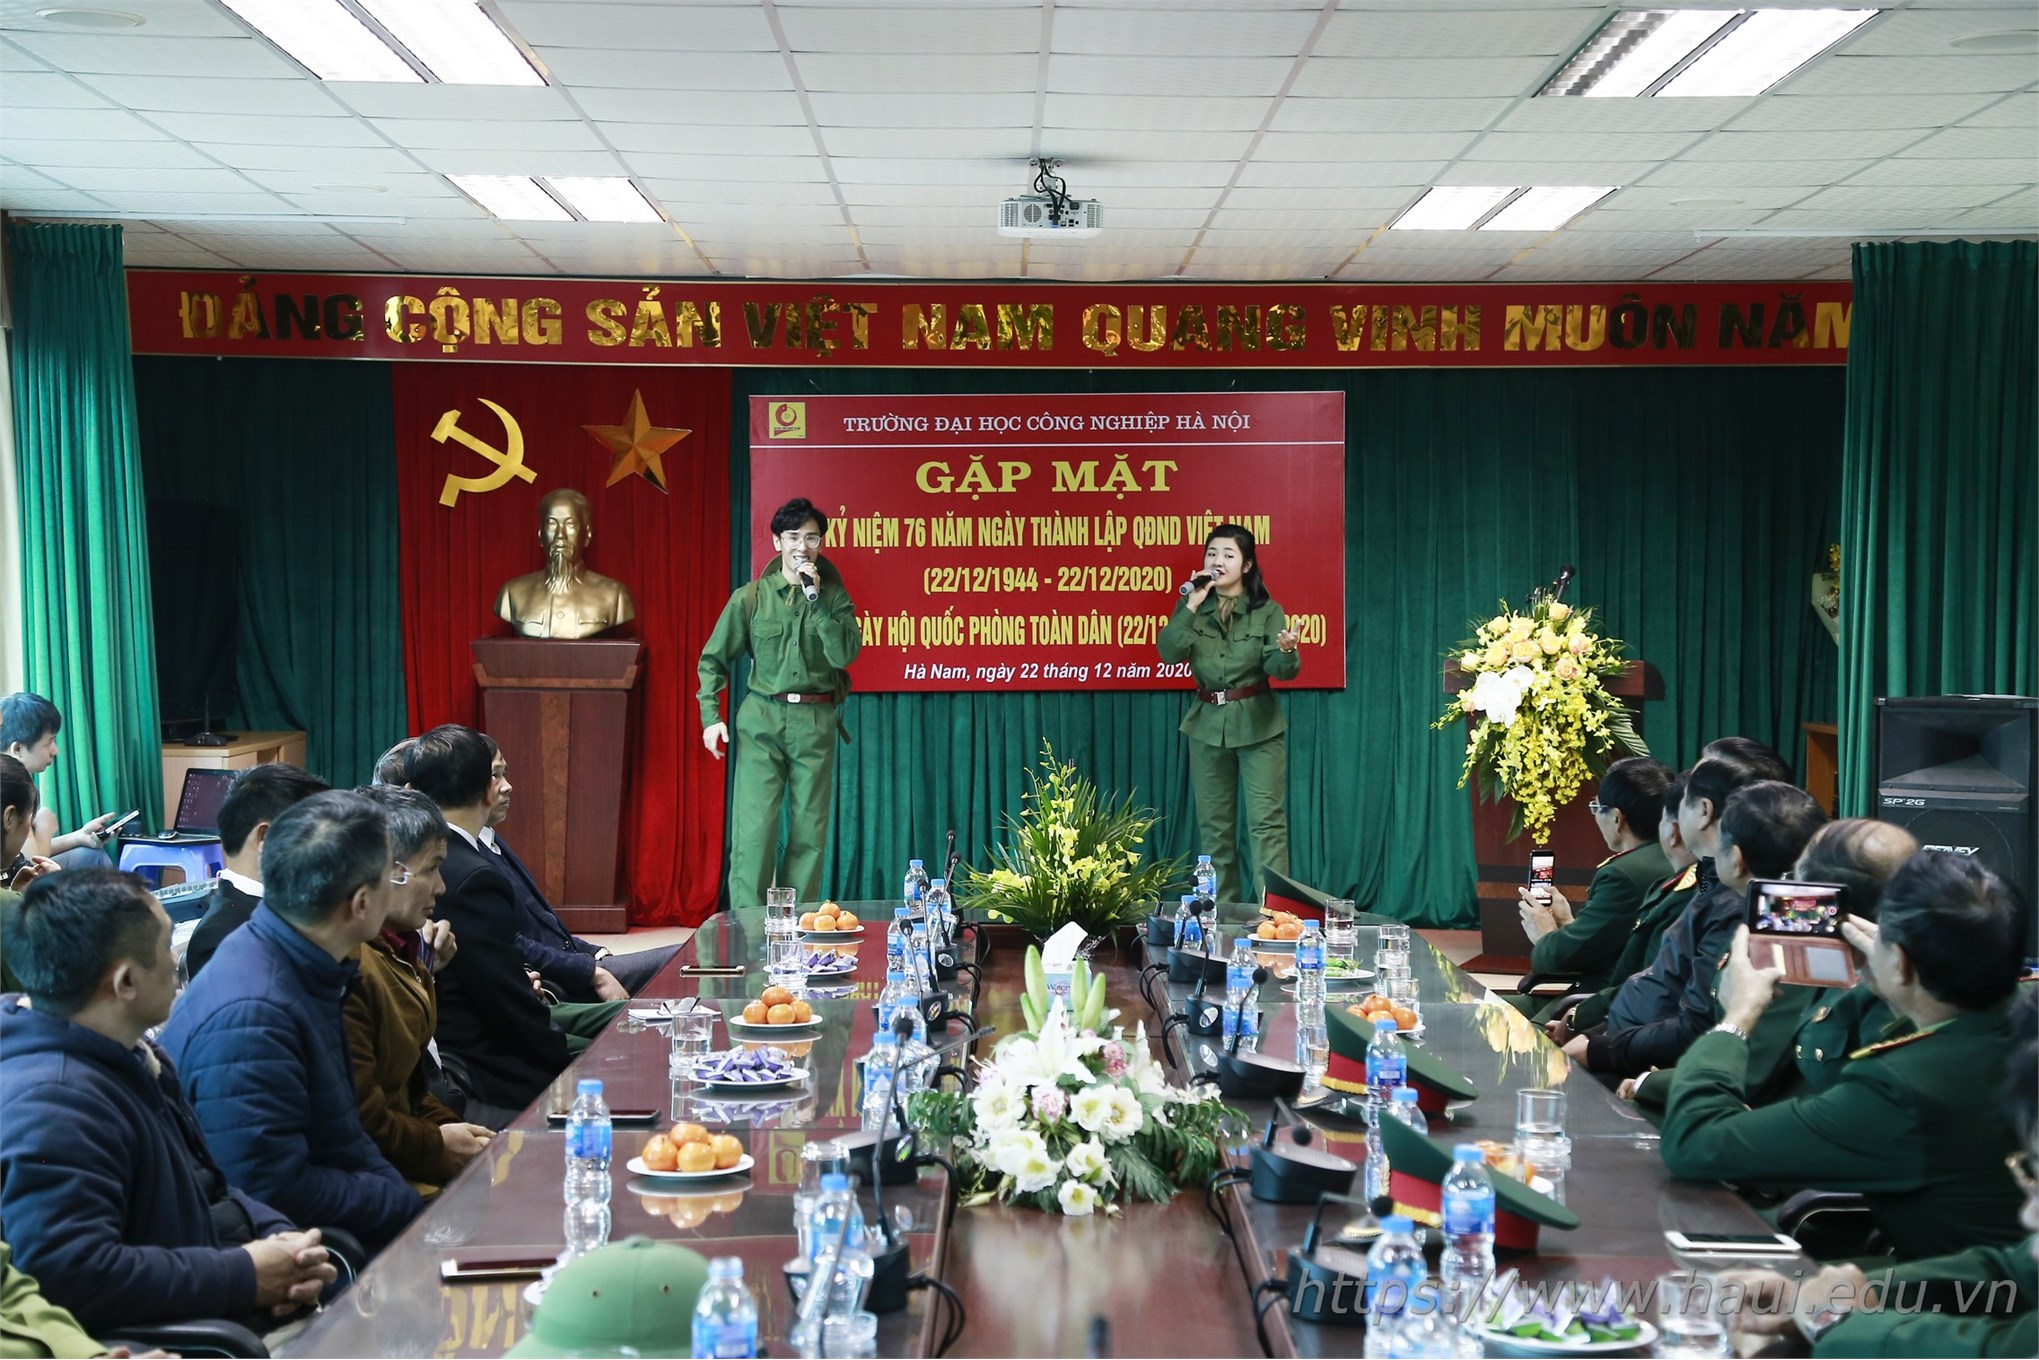 Gặp mặt kỷ niệm 76 năm ngày thành lập Quân đội nhân dân Việt Nam và 31 năm ngày hội Quốc phòng toàn dân 22/12